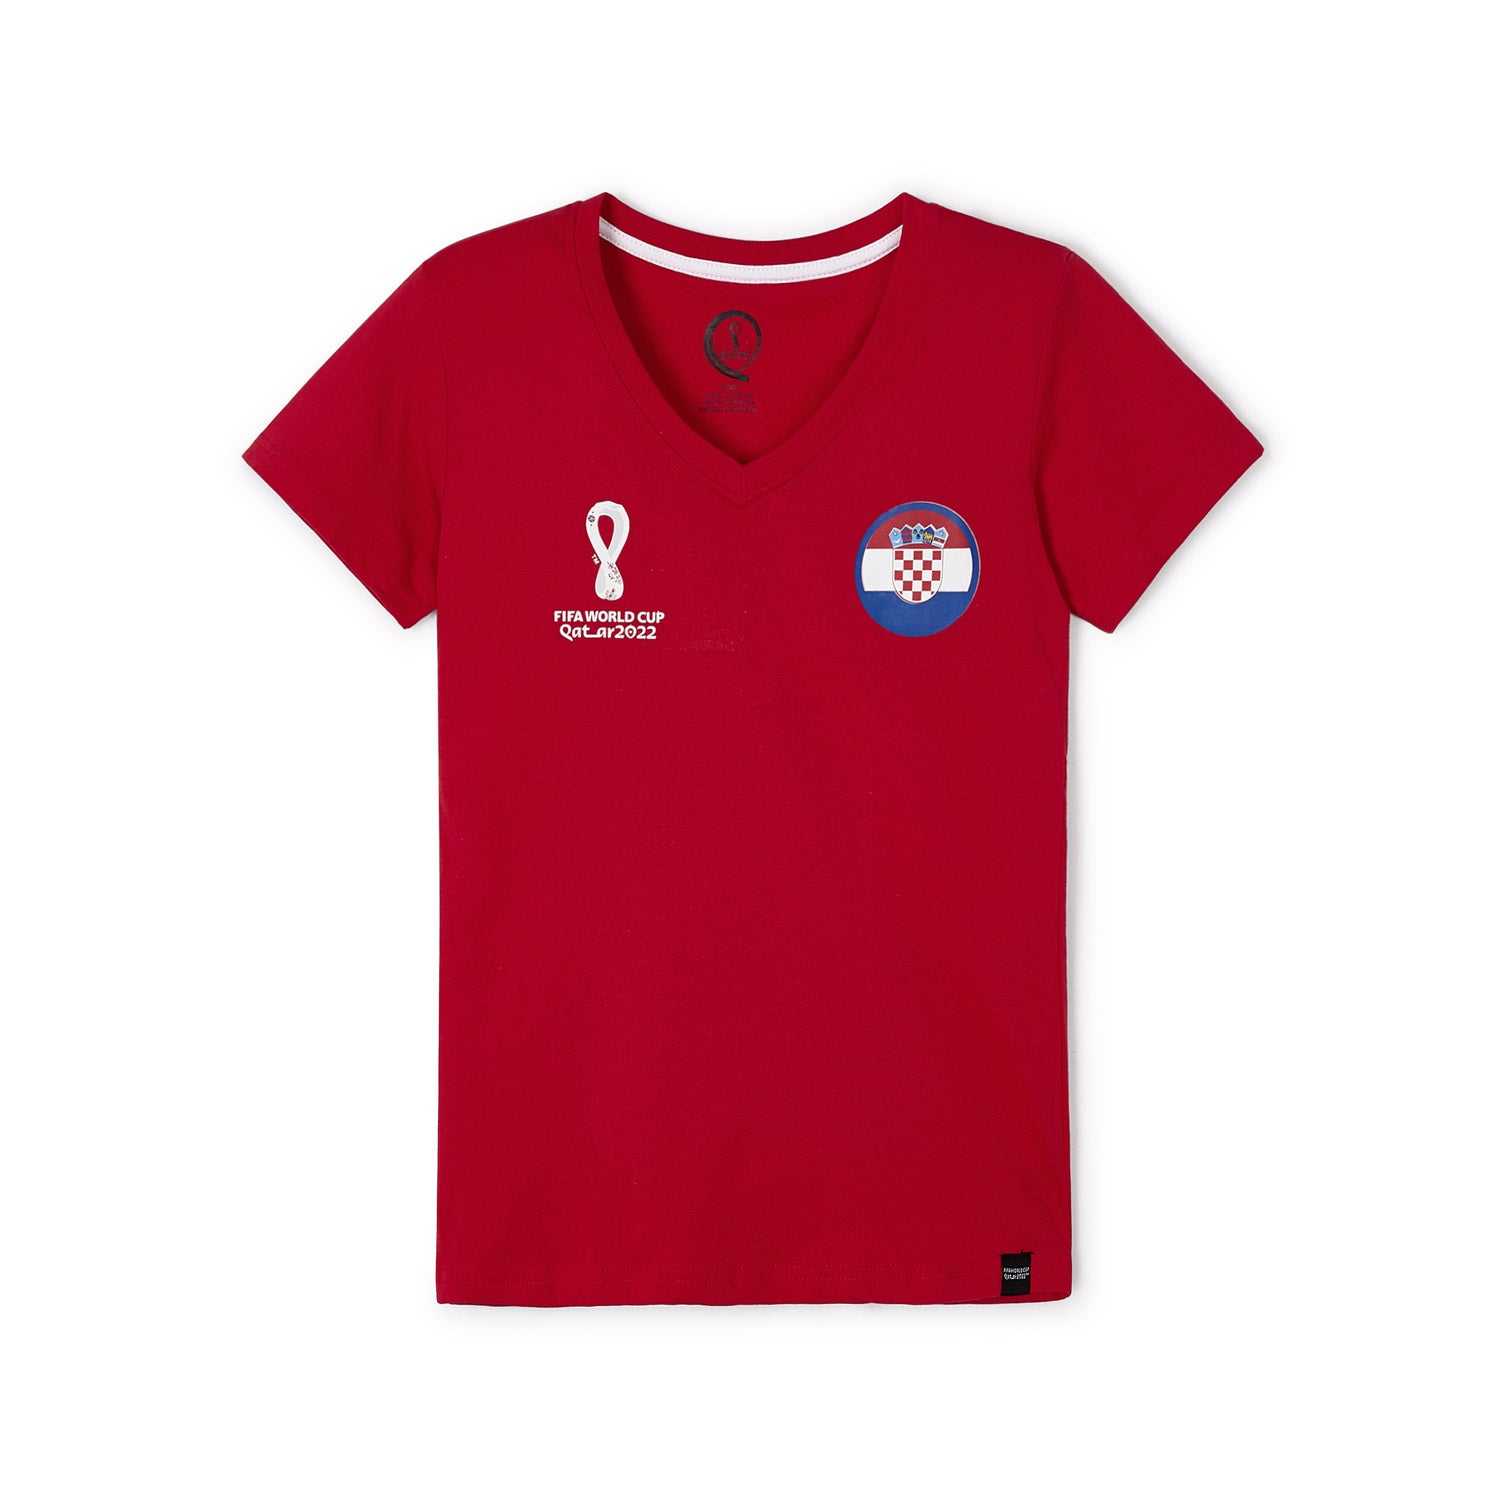 2022 World Cup Croatia Red T-Shirt - Women's